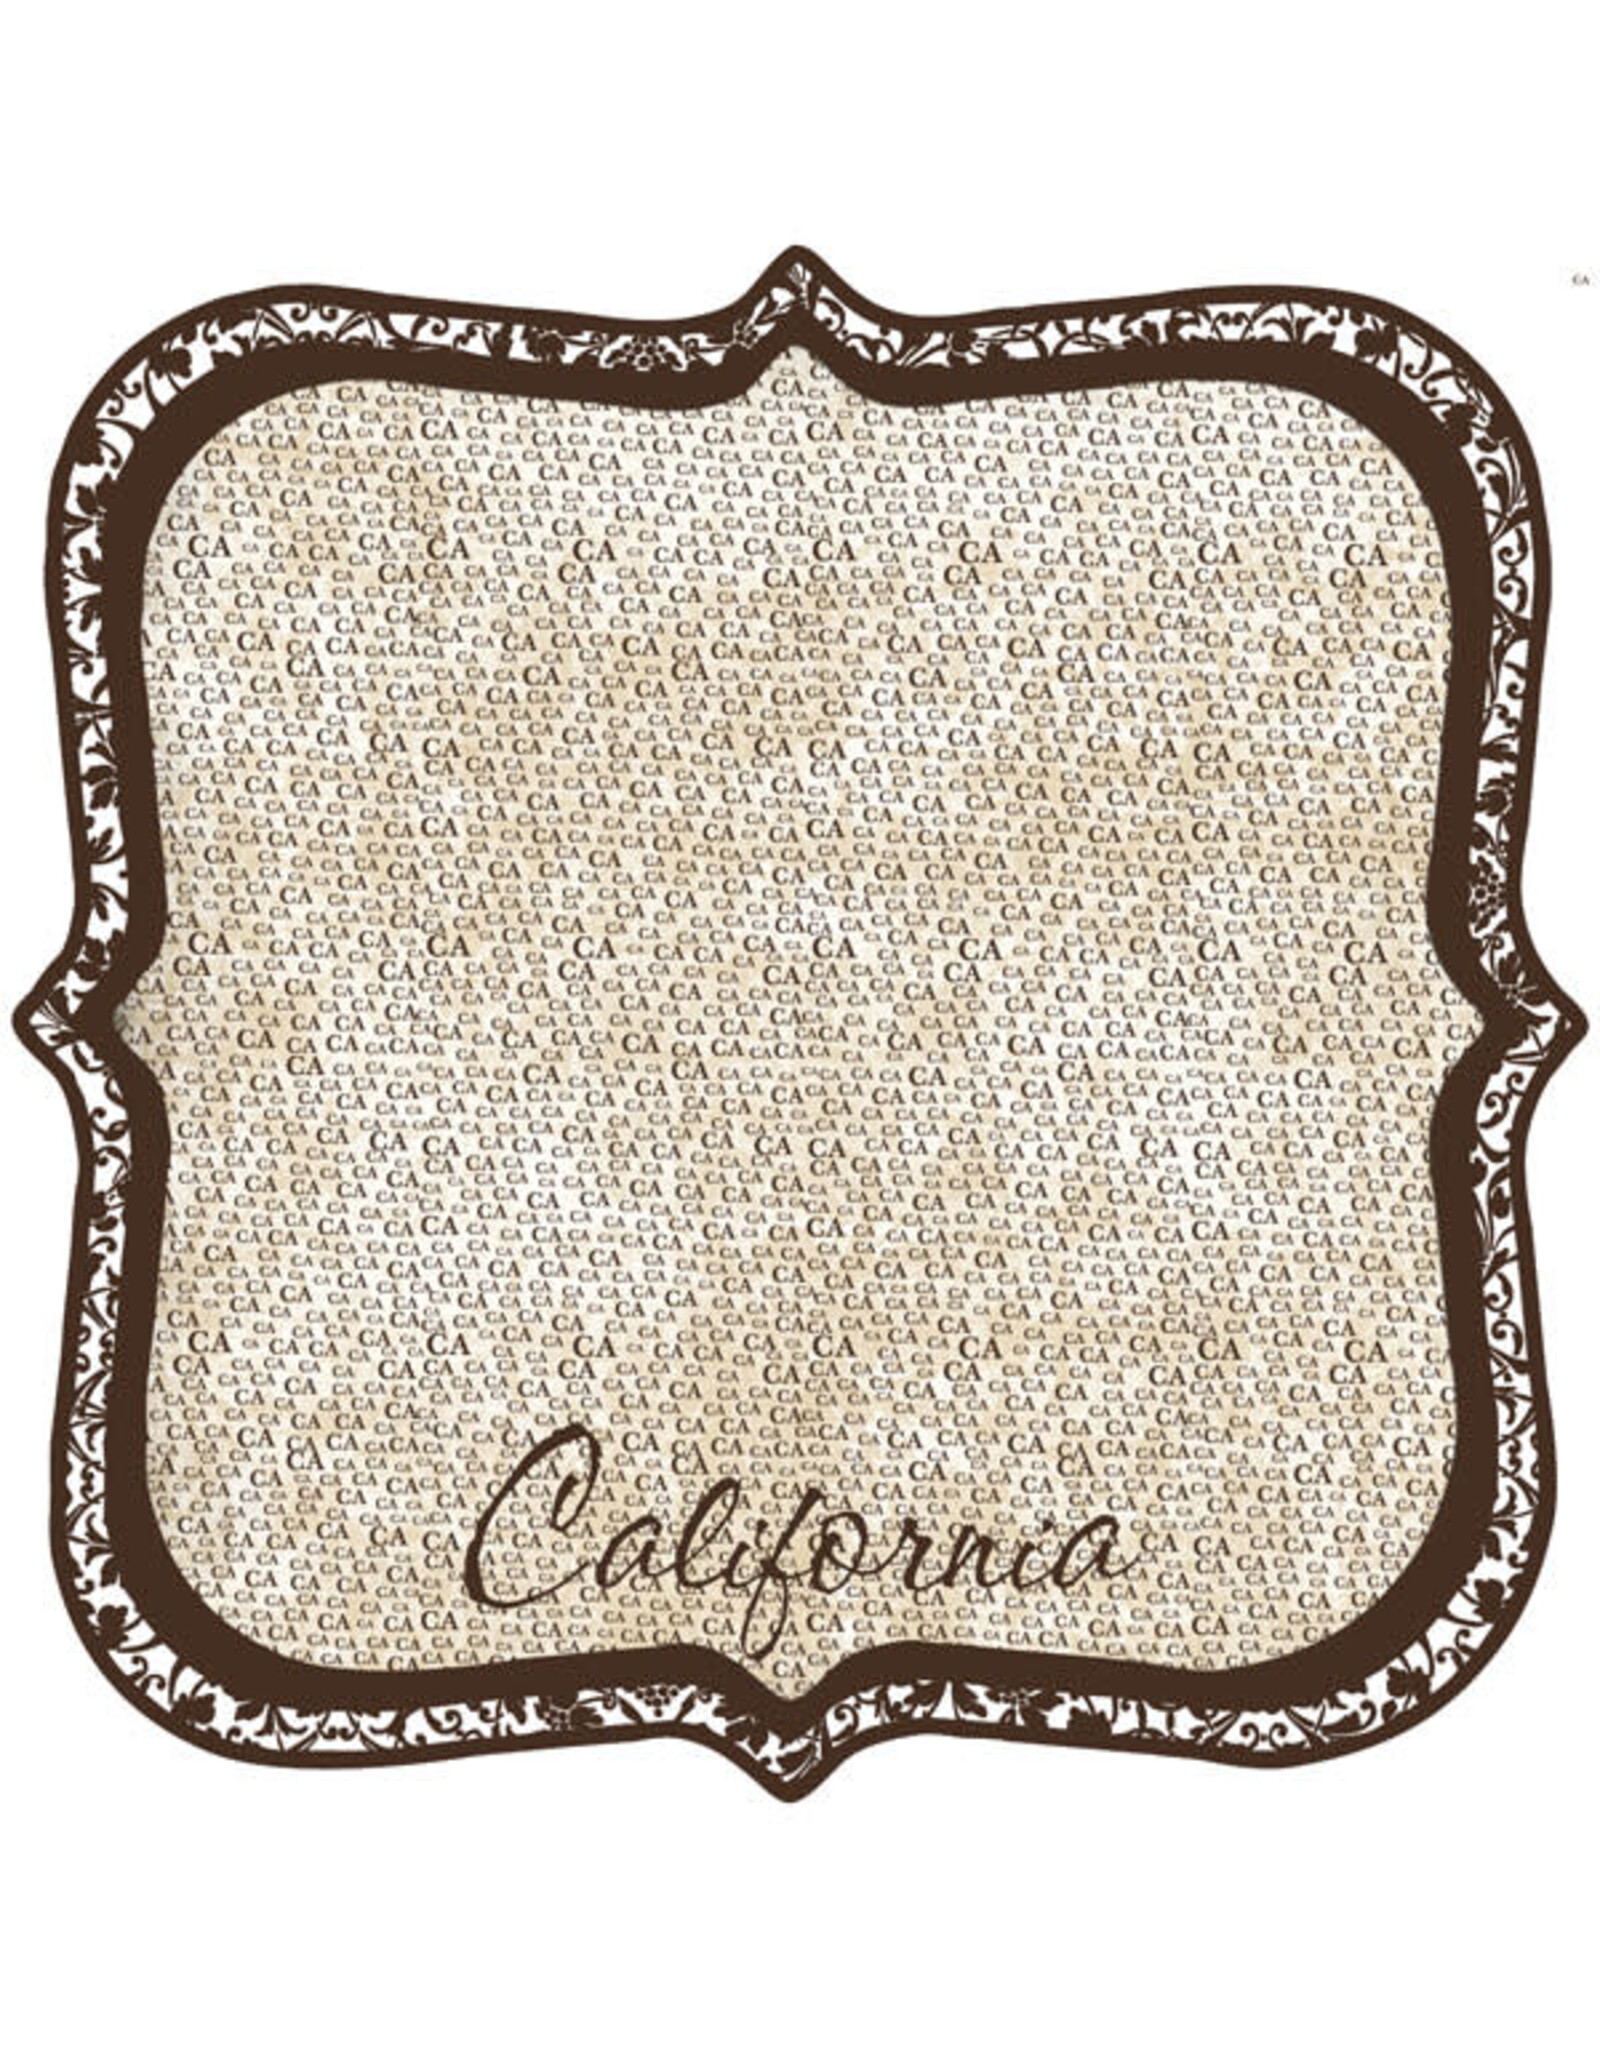 California Paper